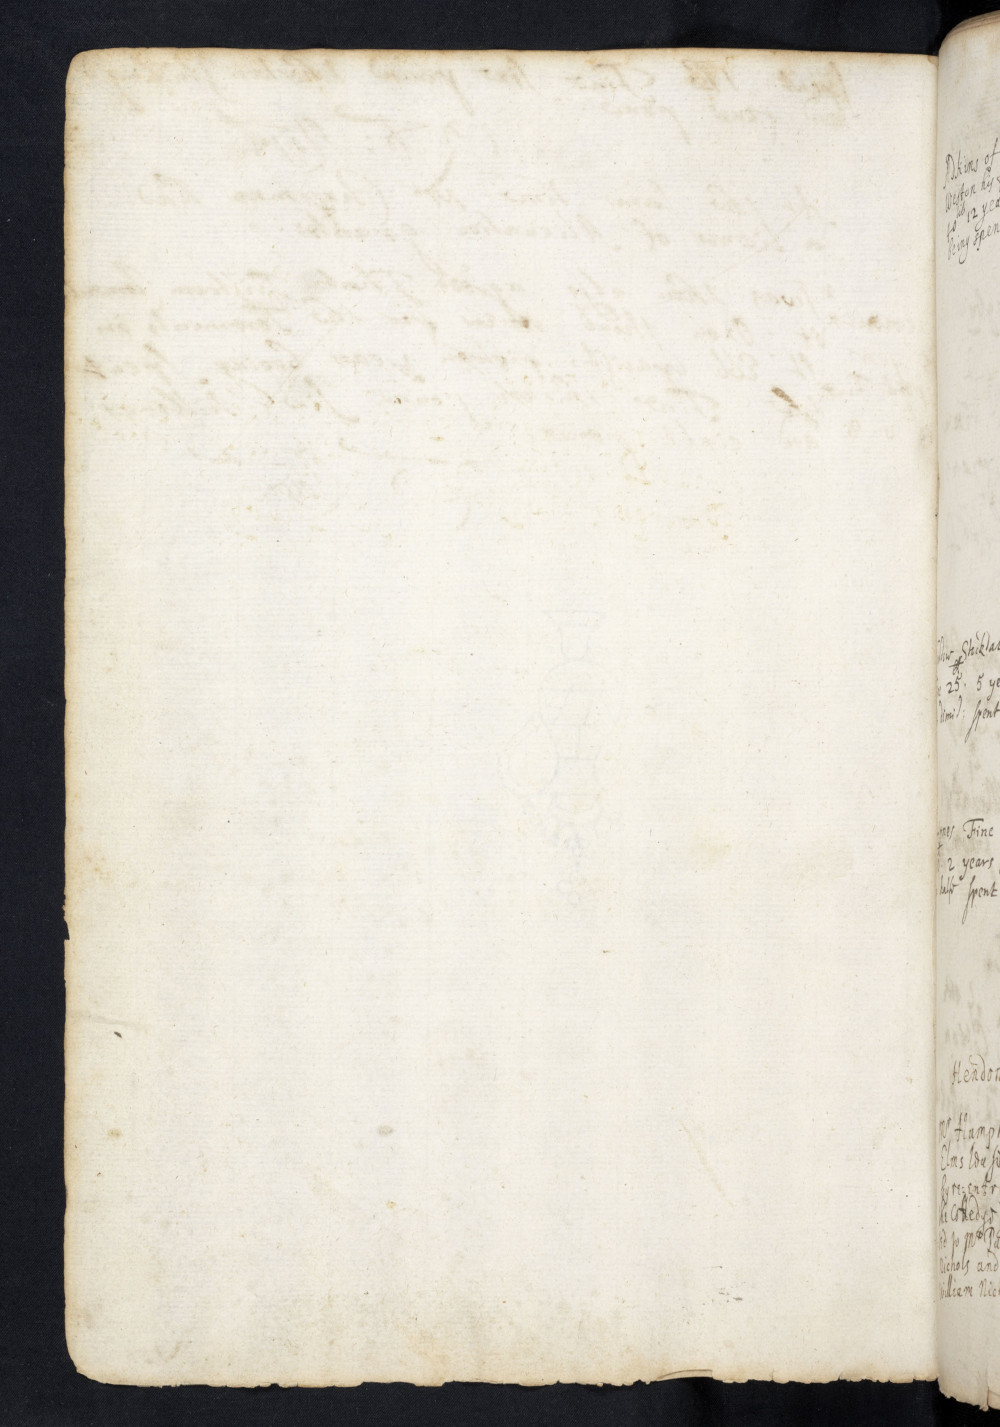 Folio 139 v